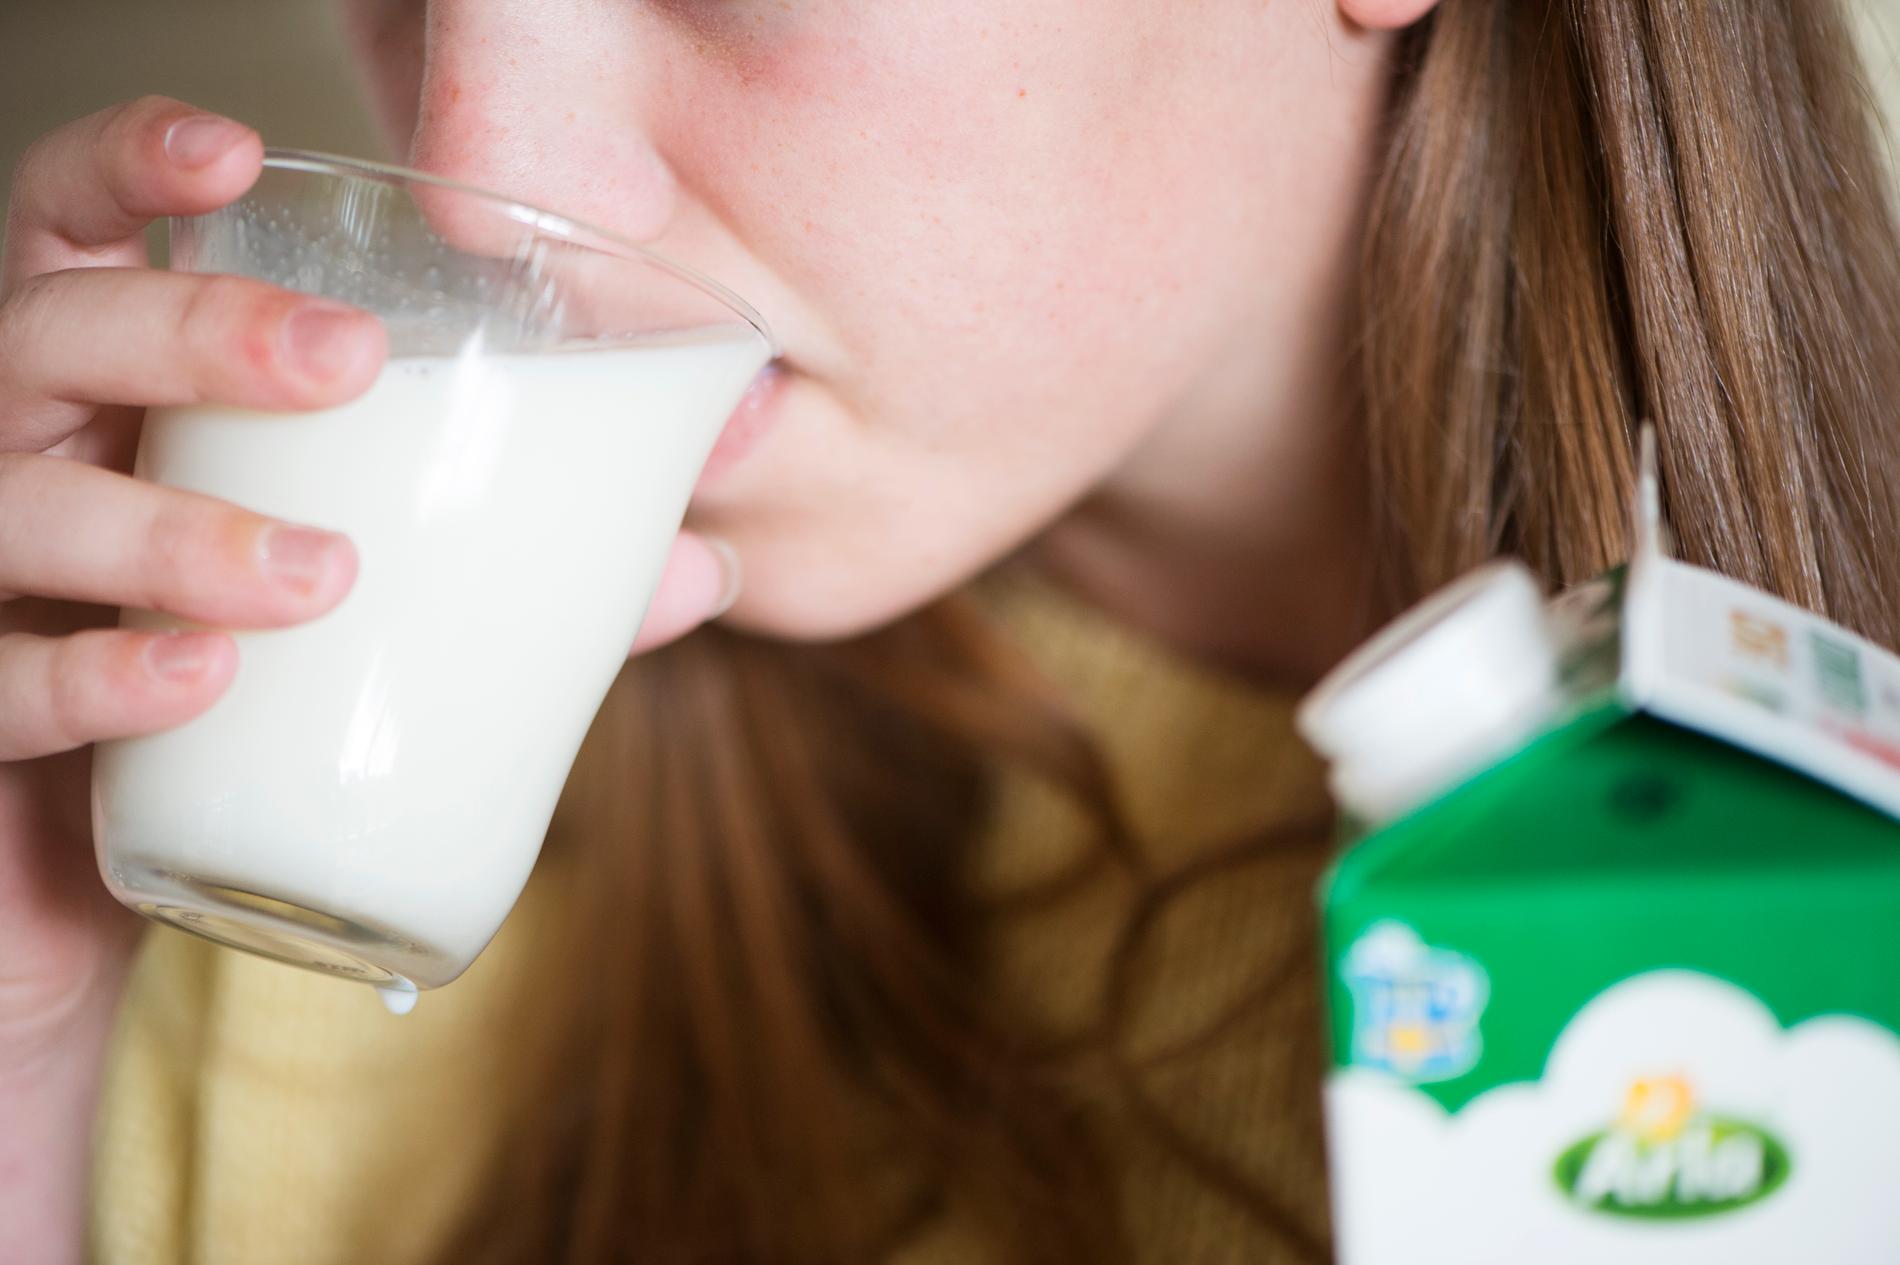 "Jag kan inte se några tecken på att mjölken skulle återkomma som en vanlig måltidsdryck", säger etnologen Håkan Jönsson. Arkivbild.